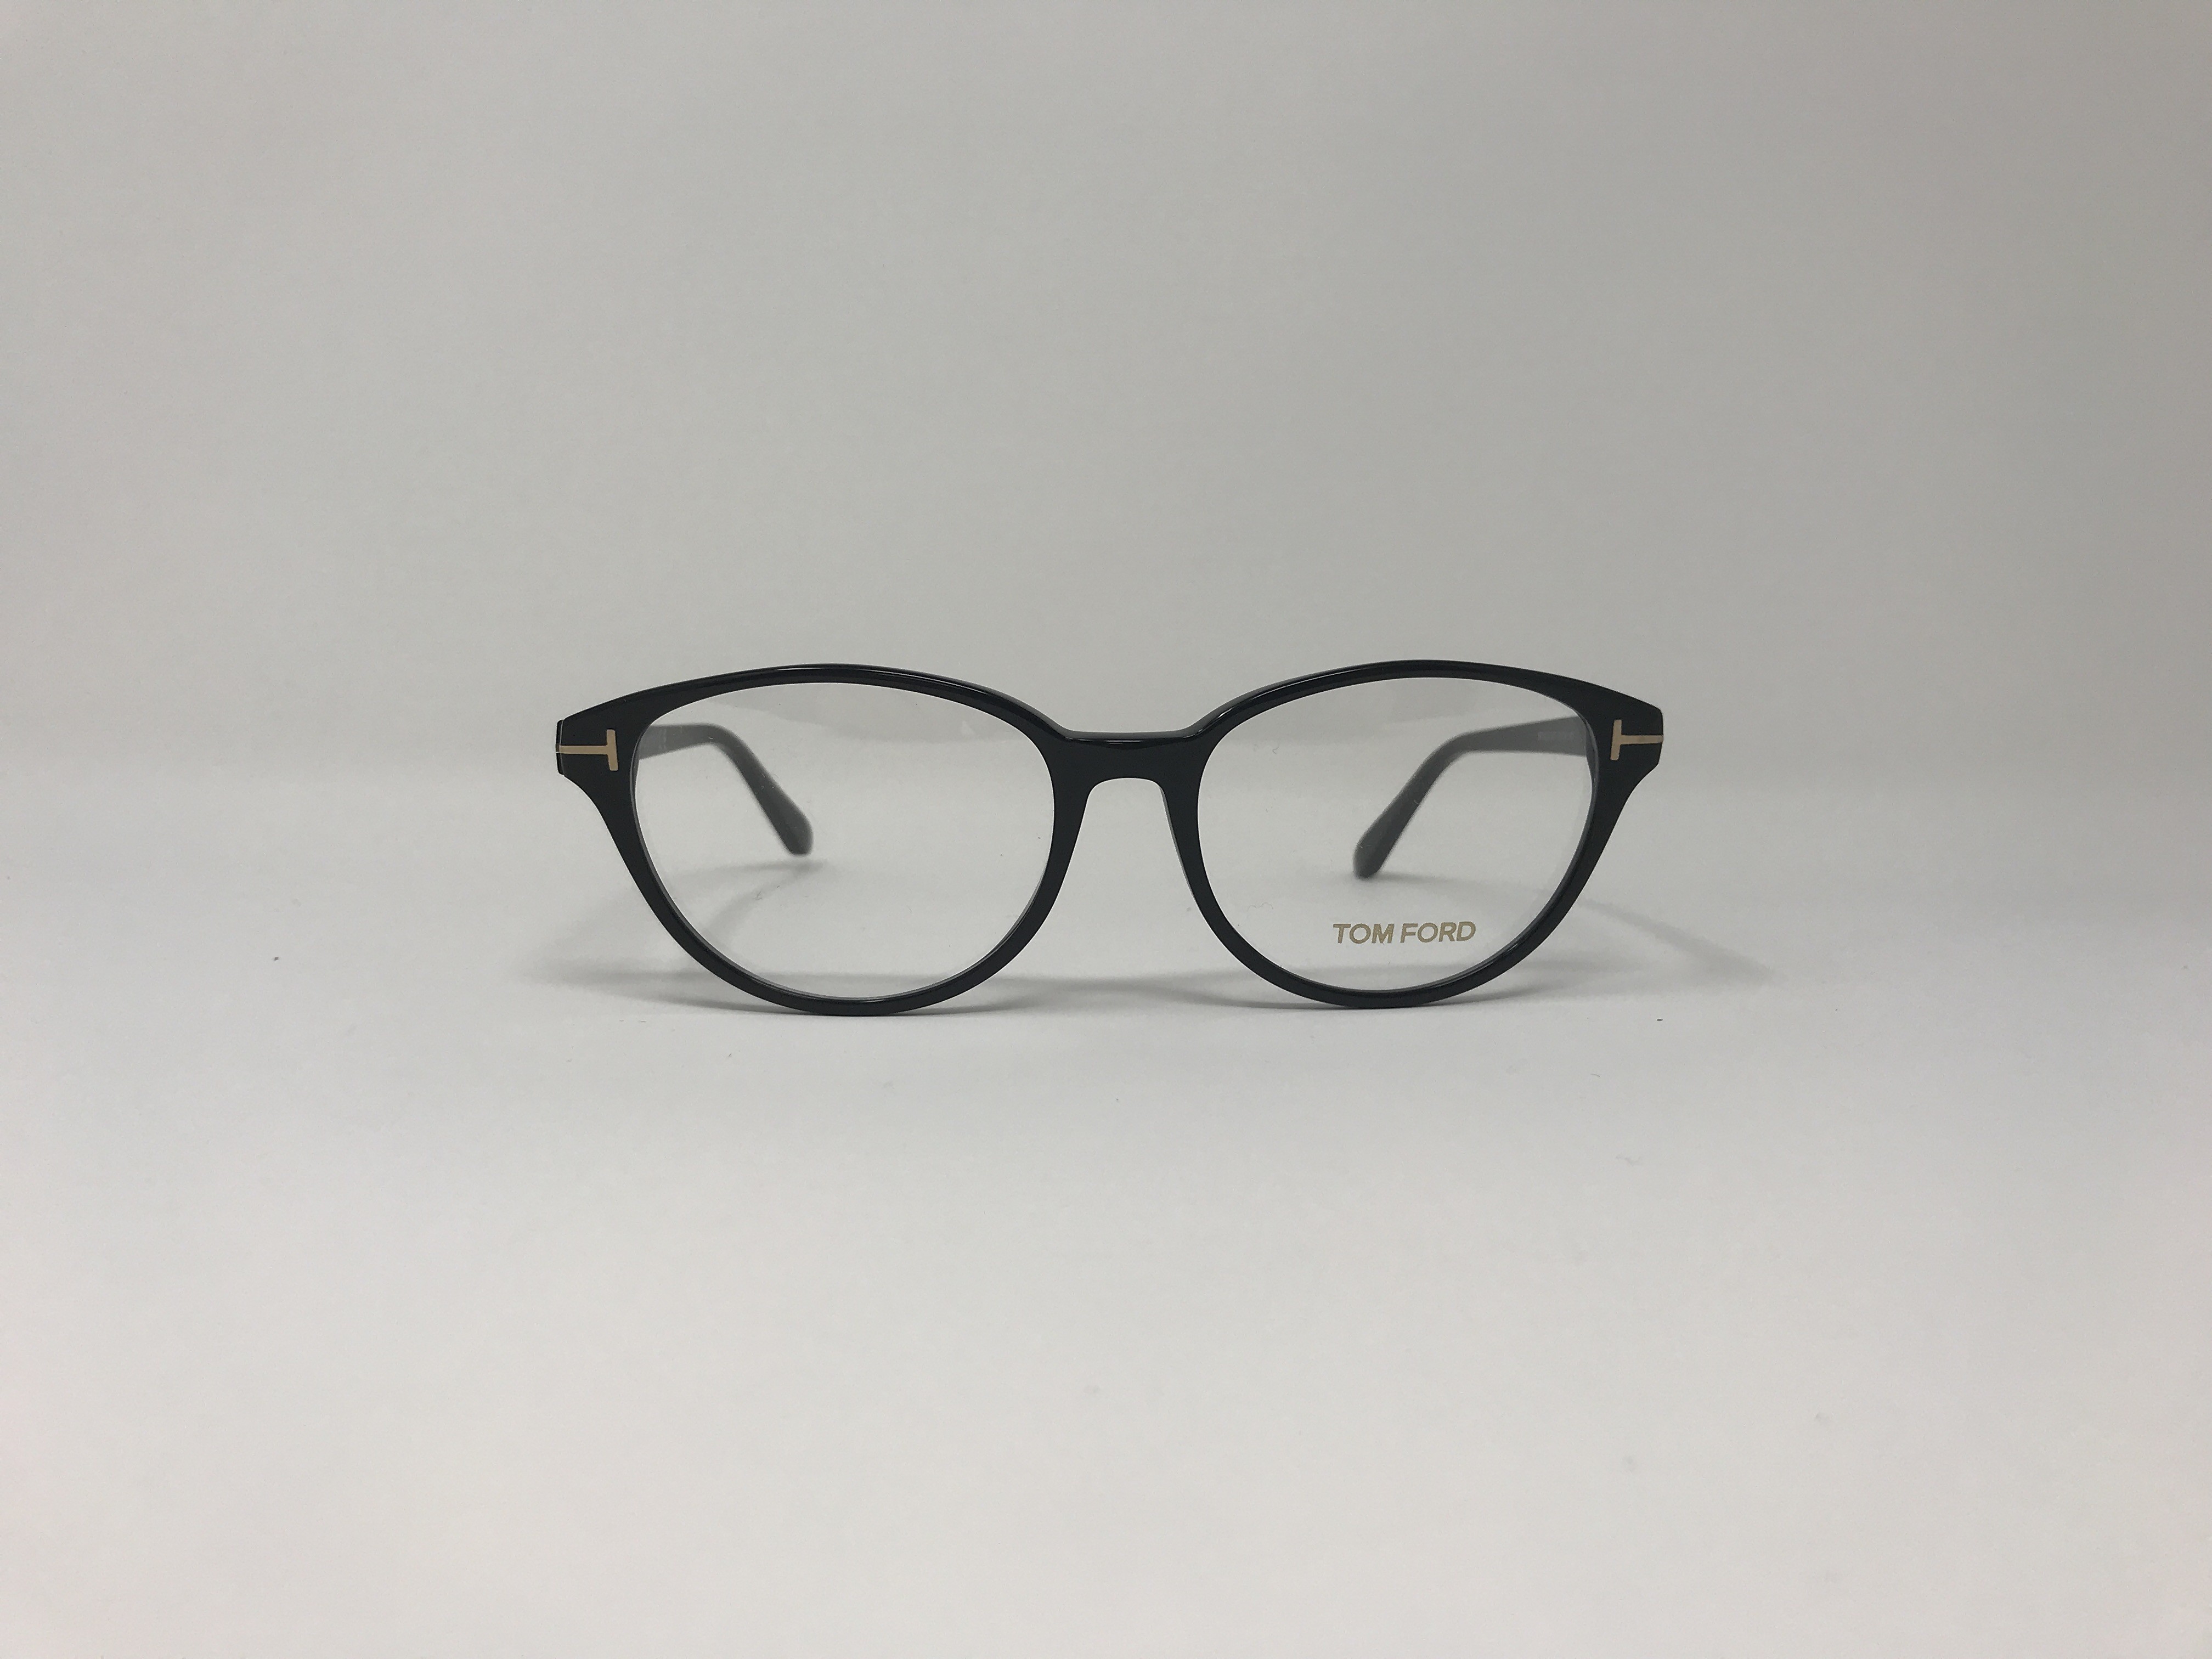 Tom Ford TF 5422 Men's eyeglasses